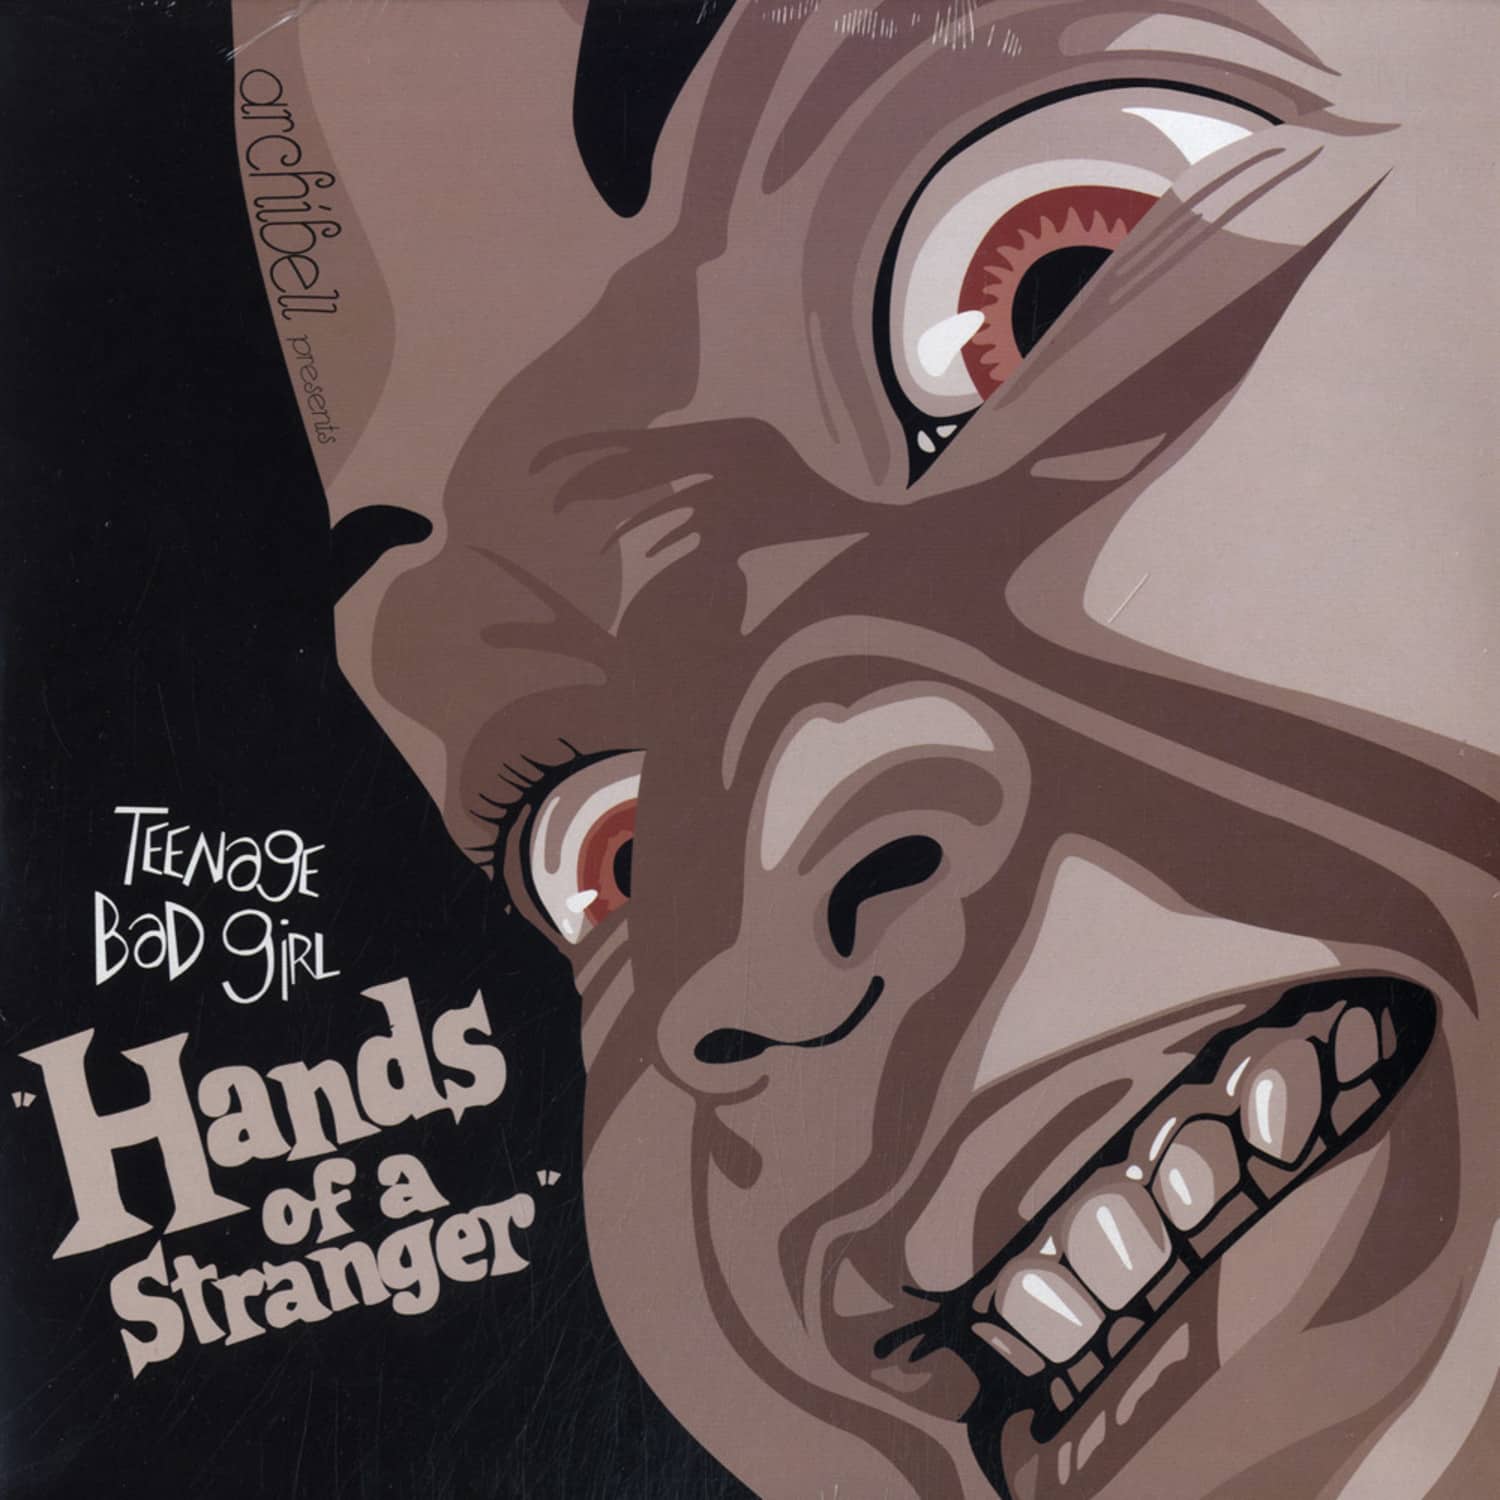 Teenage Bad Girl - HANDS OF A STRANGER